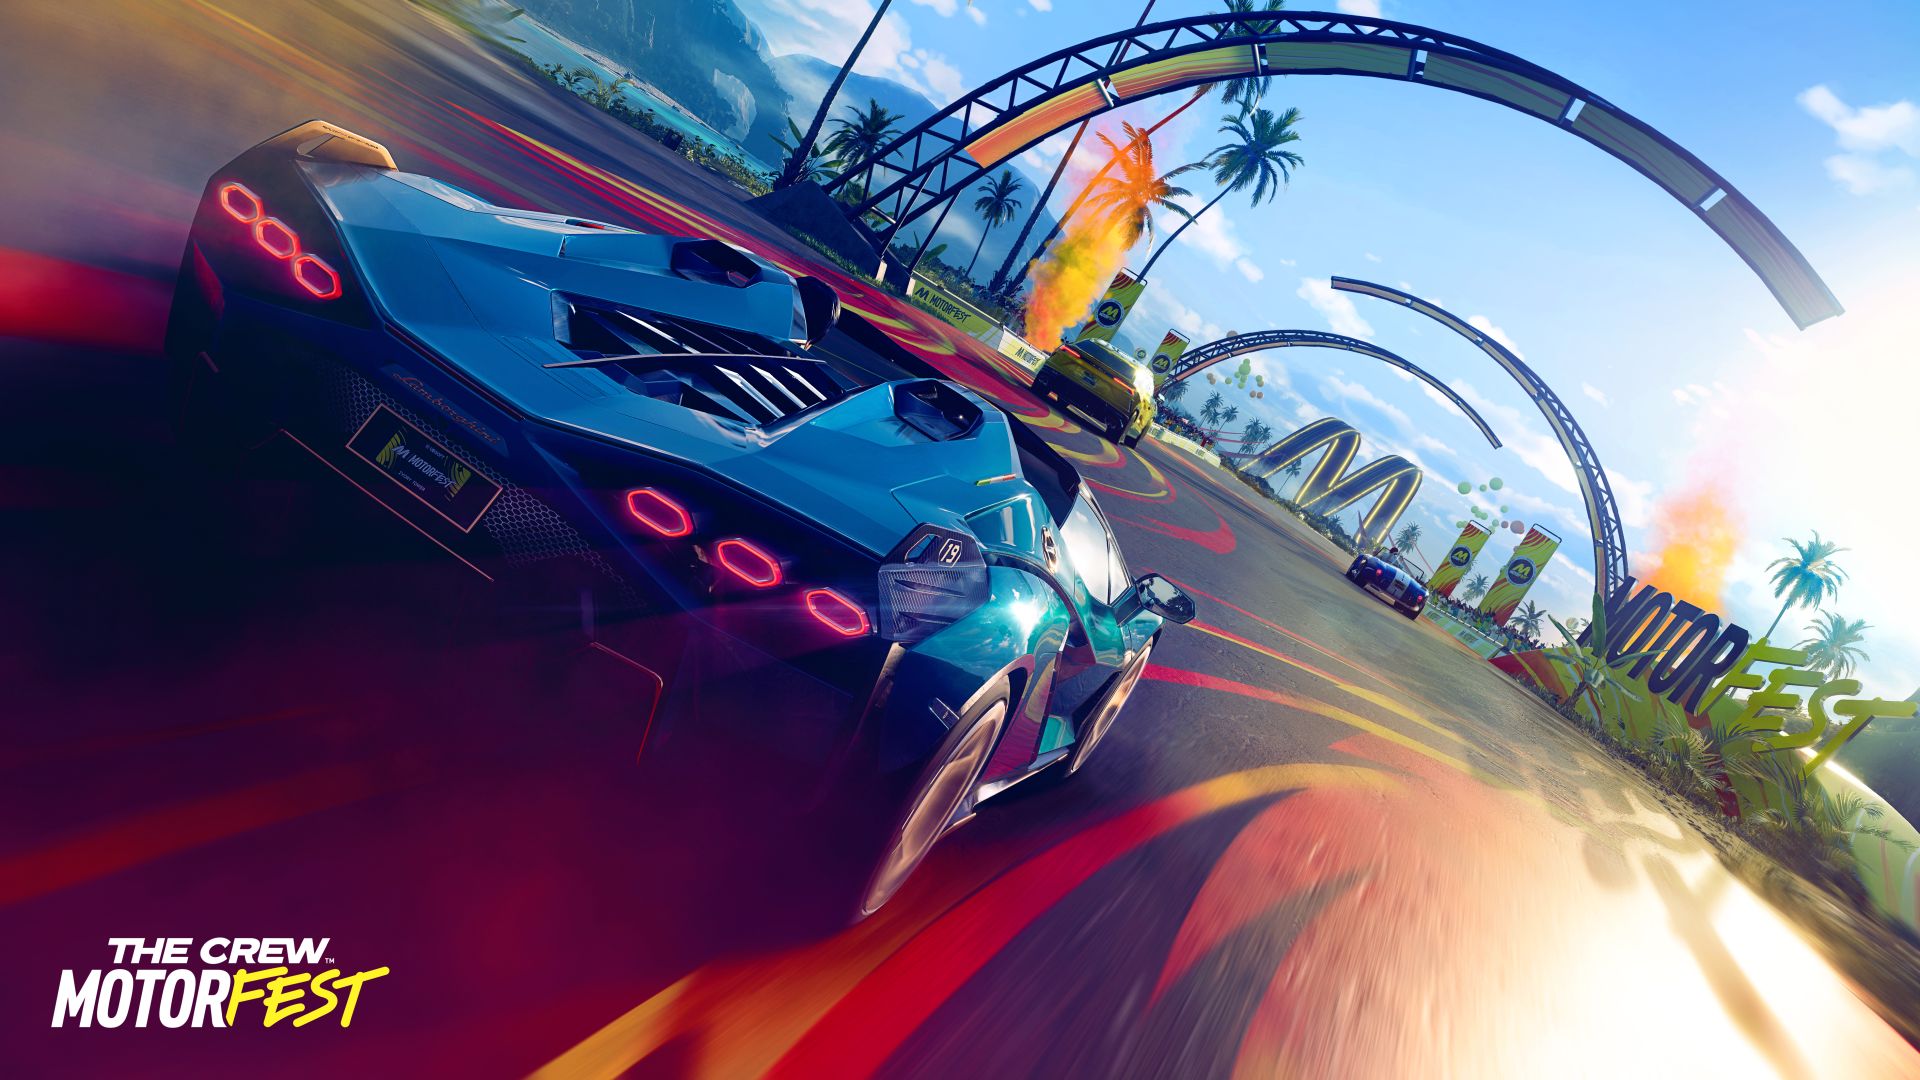 Ubisoft bestätigt den Veröffentlichungstermin von The Crew Motorfest - das Adventure-Rennen wird am 14. September erscheinen